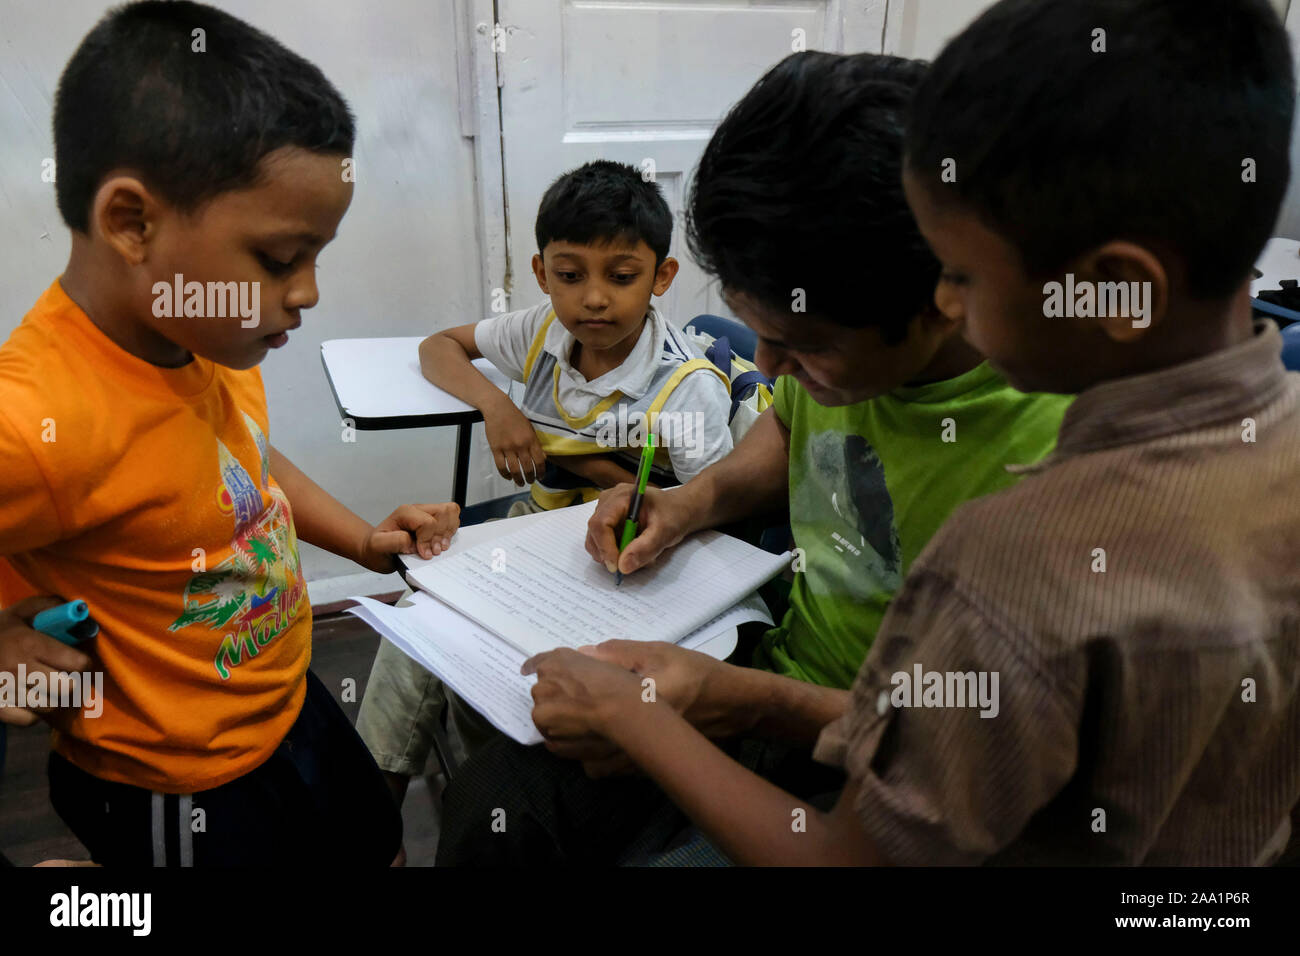 Einige Kinder, die älteren Schüler in der Klasse an der Akademie. Rohingya English Academy ist ein Learning Center, die freie Bildung auf die Rohingya-flüchtlinge sowohl für Kinder als auch für Erwachsene bietet, wurde es von Saif Ullah ein rohingya Bürger leben in Malaysia und auch ein englischer Tutor an der Akademie Wer erhält keine Unterstützung von der Regierung gegründet. Malaysia hat mehr als 177,690 registrierte Flüchtlinge und Asylsuchenden Rohingya Nach UNHCR-Statistik und 45,470 davon sind Kinder unter 18 Jahren. Stockfoto